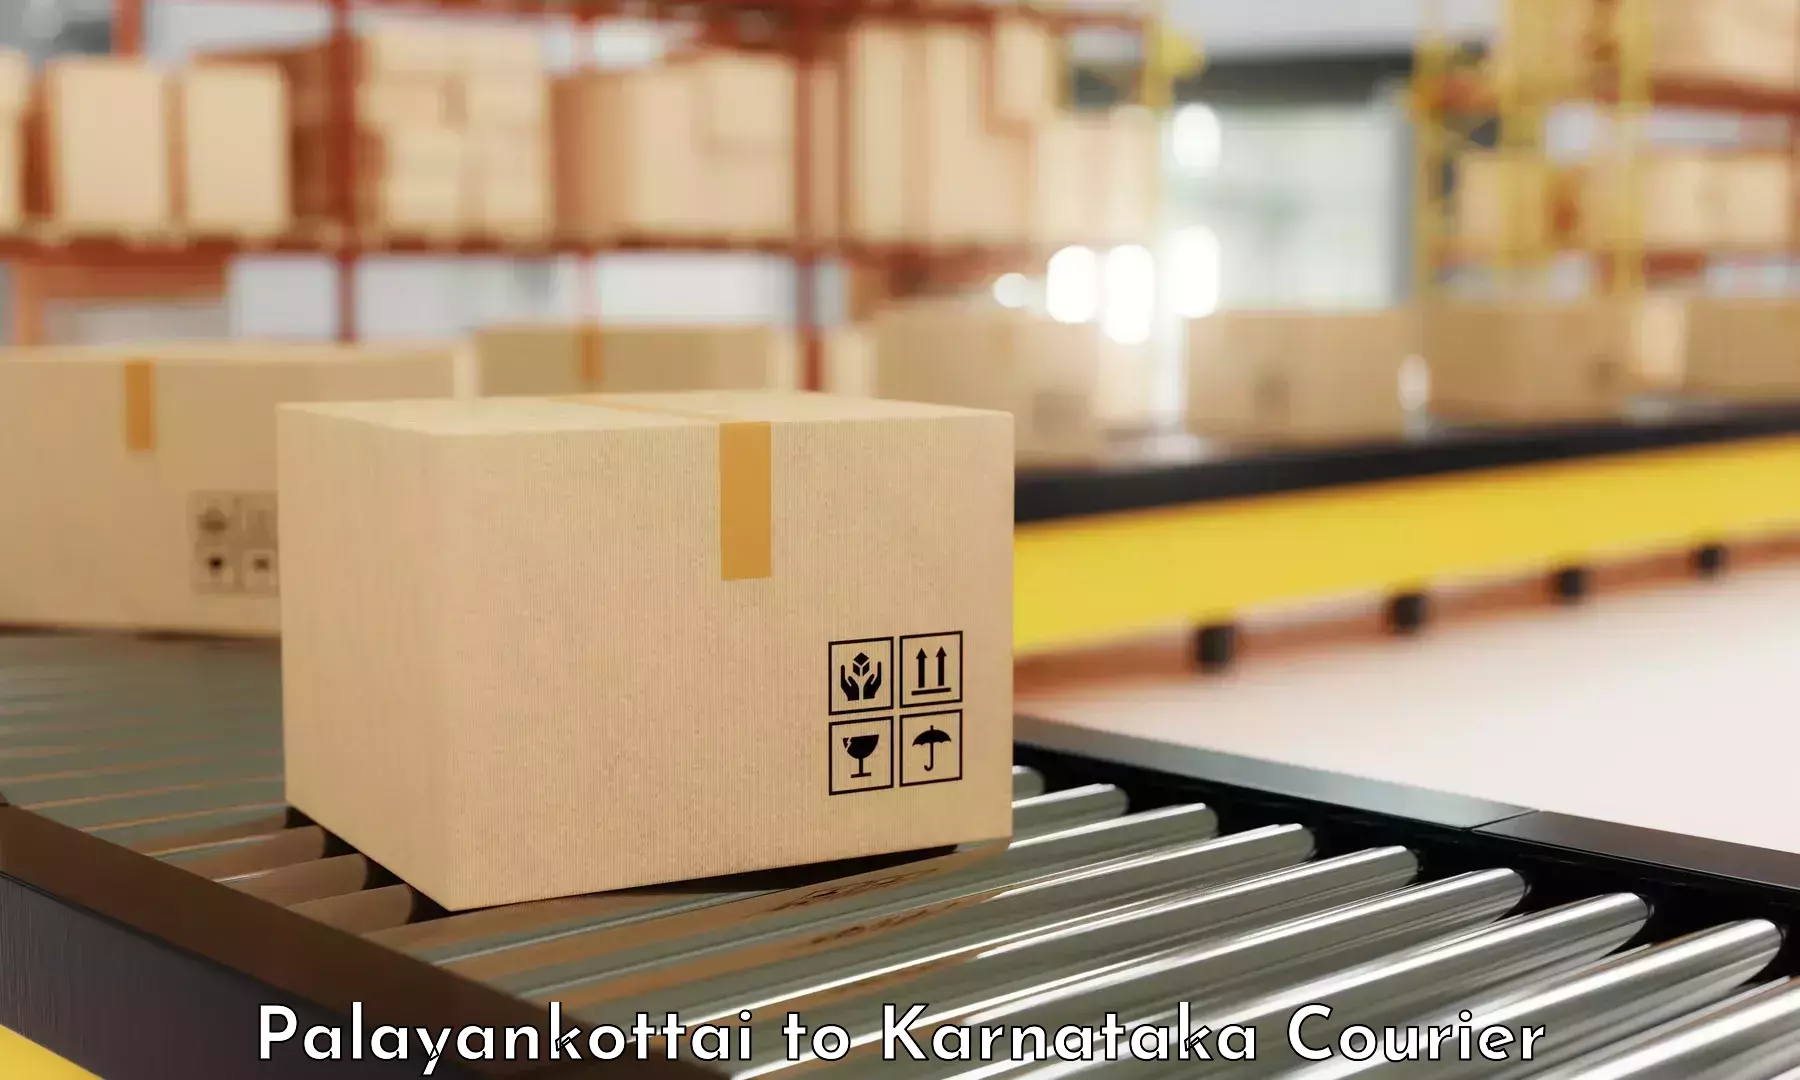 Smart courier technologies Palayankottai to Moodabidri